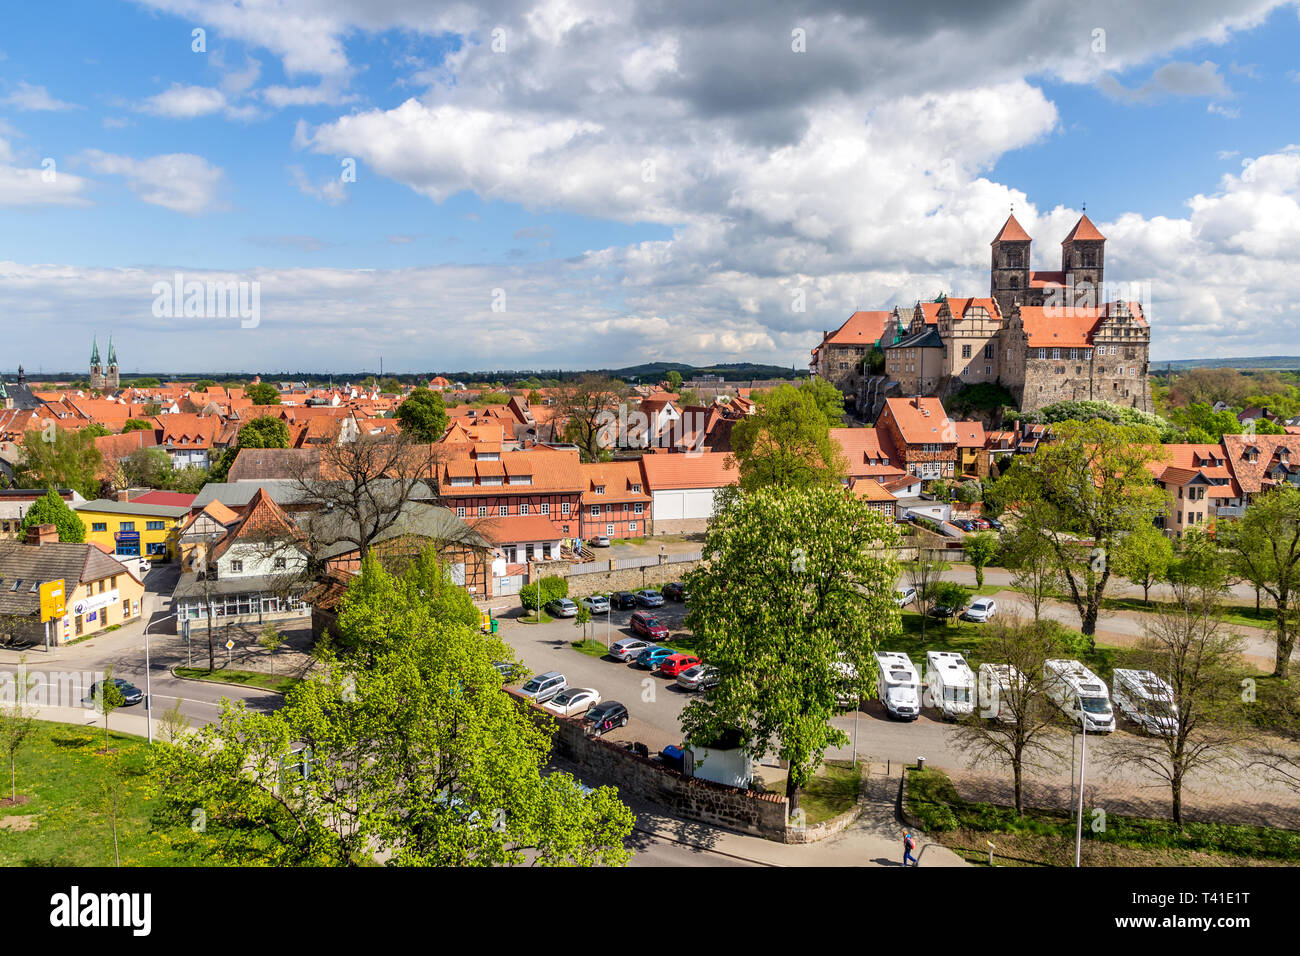 QUEDLINBURG, ALLEMAGNE - Apr 26, 2018 : vue panoramique de la ville médiévale, au nord de l'Harz. La Saxe-Anhalt, Allemagne Banque D'Images